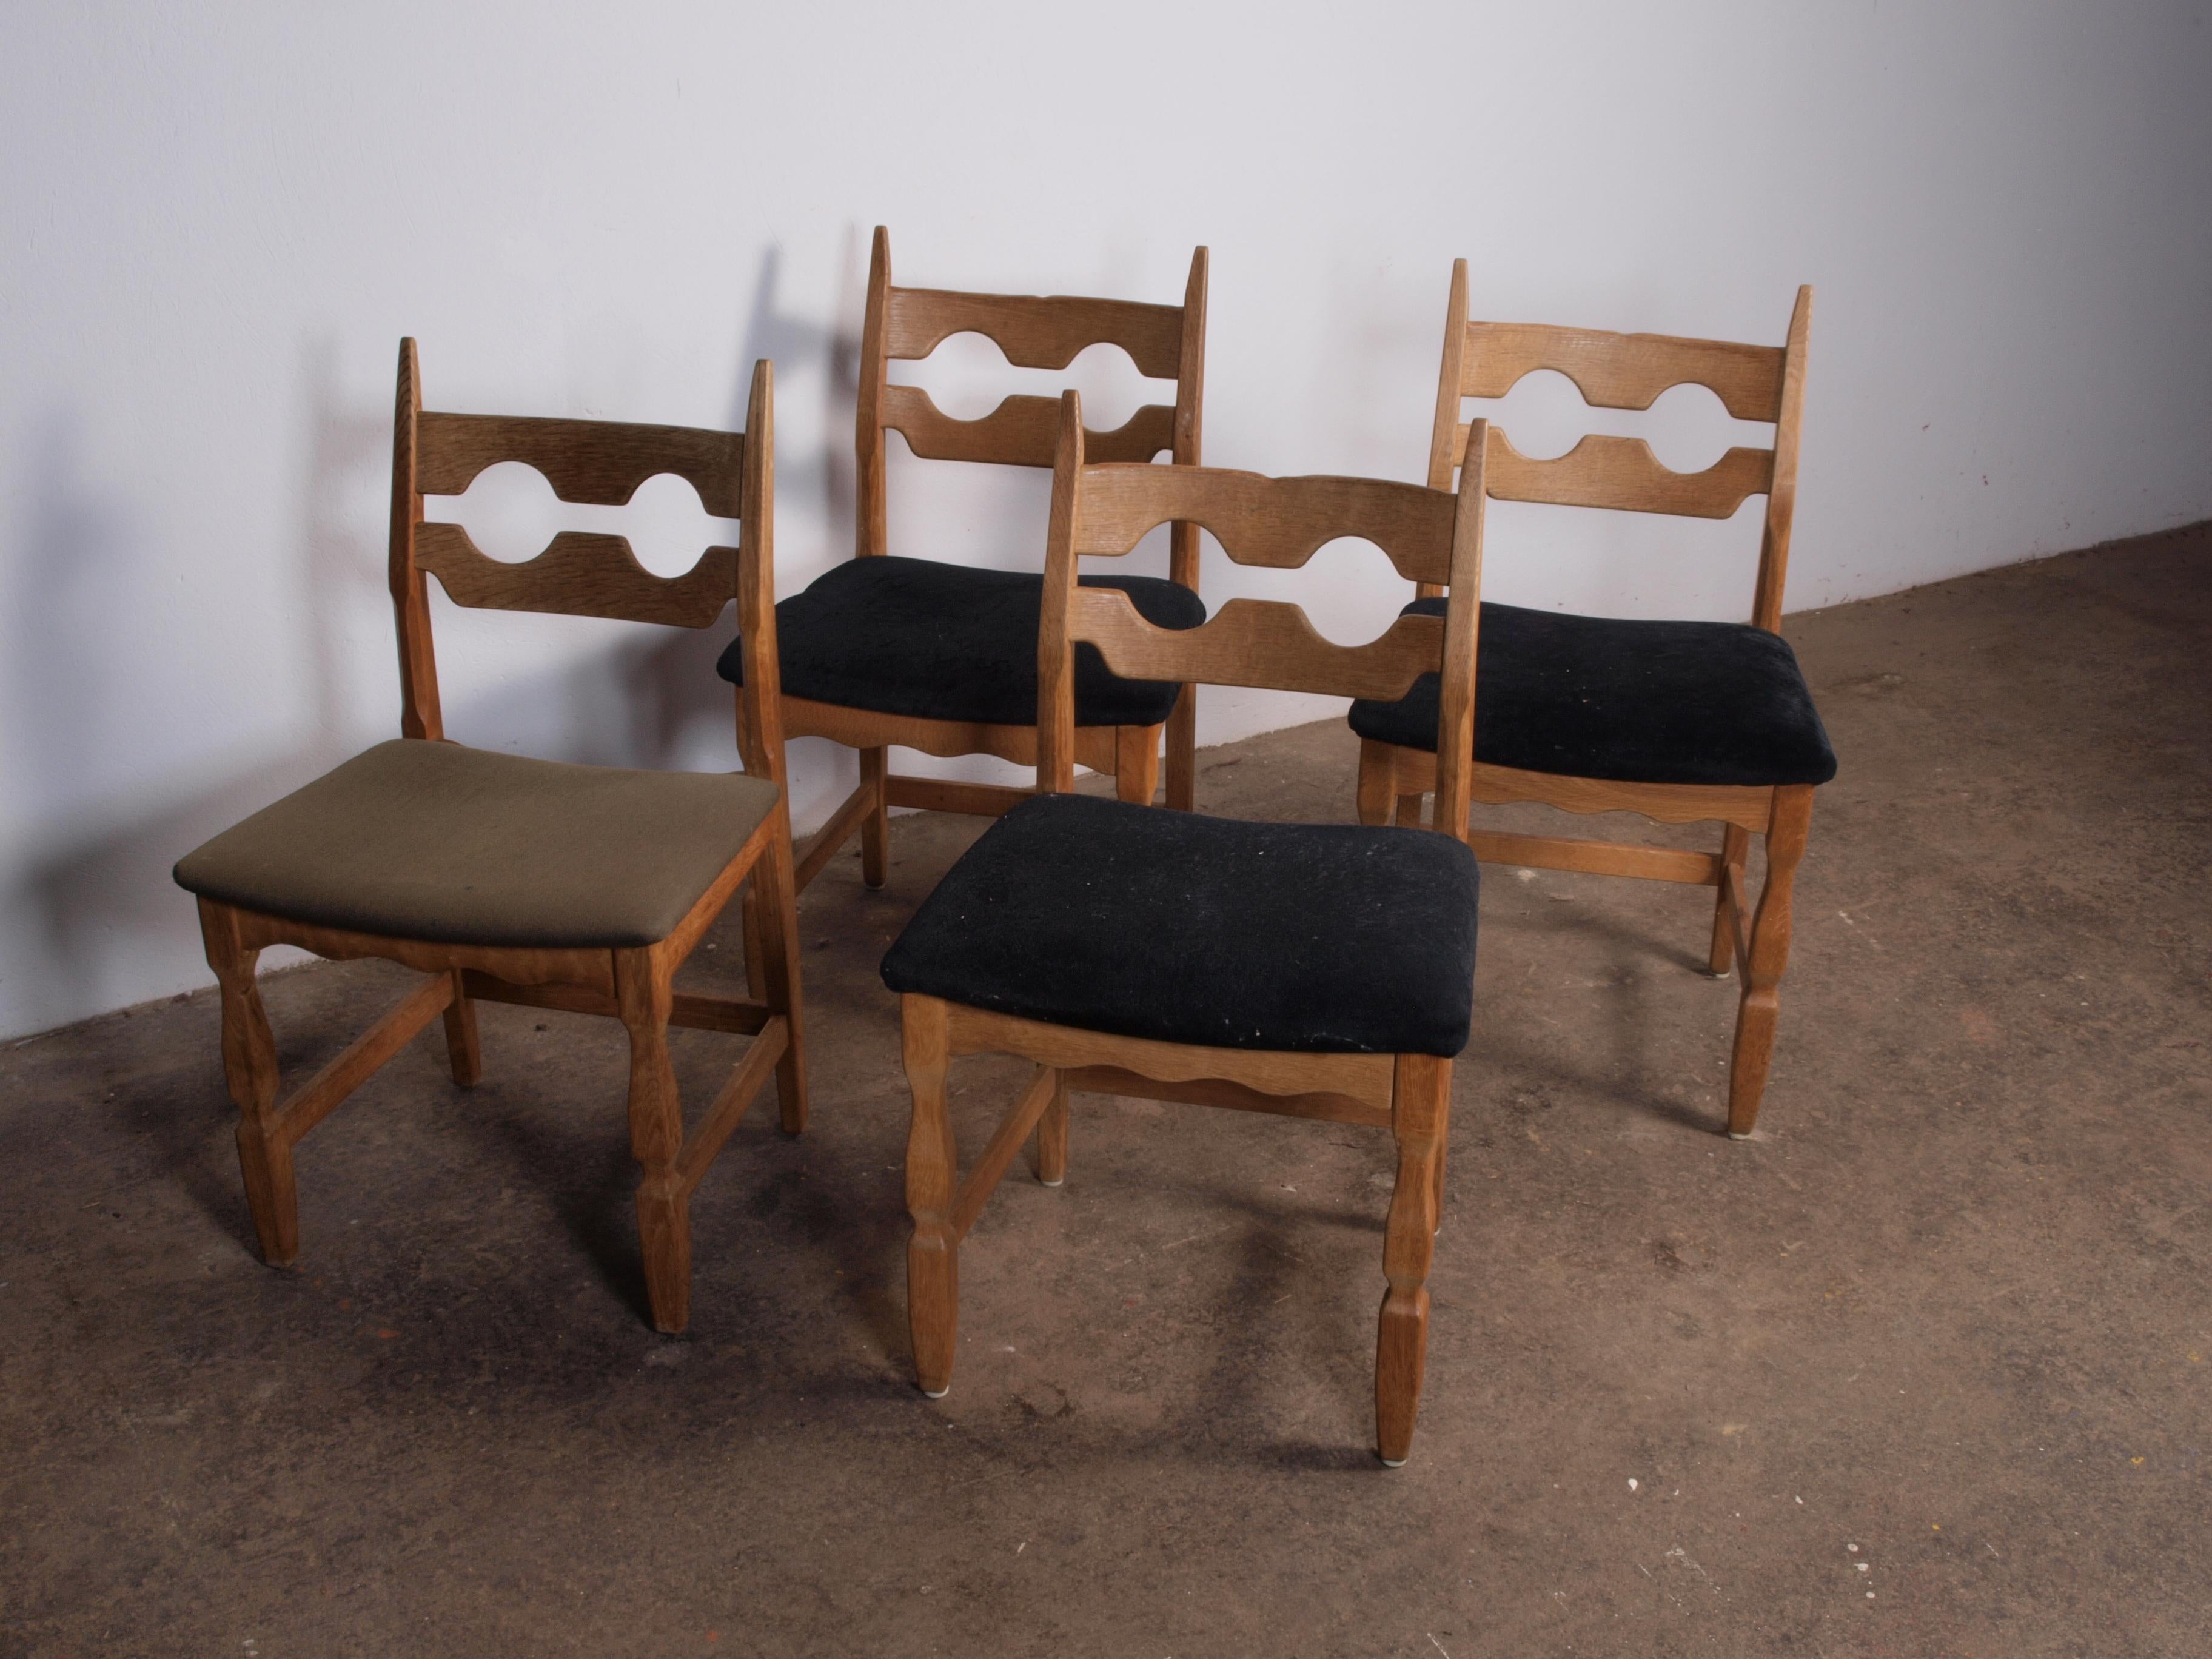 Die markanten Esszimmerstühle von Henning Kjærnulf sind aus Eichenholz gefertigt und zeigen eine fesselnde Mischung aus Barock und Mid-Century Modern. Diese klassischen Stühle, die als Razorblade-Modell bekannt sind, wurden in den 1960er bis 1970er